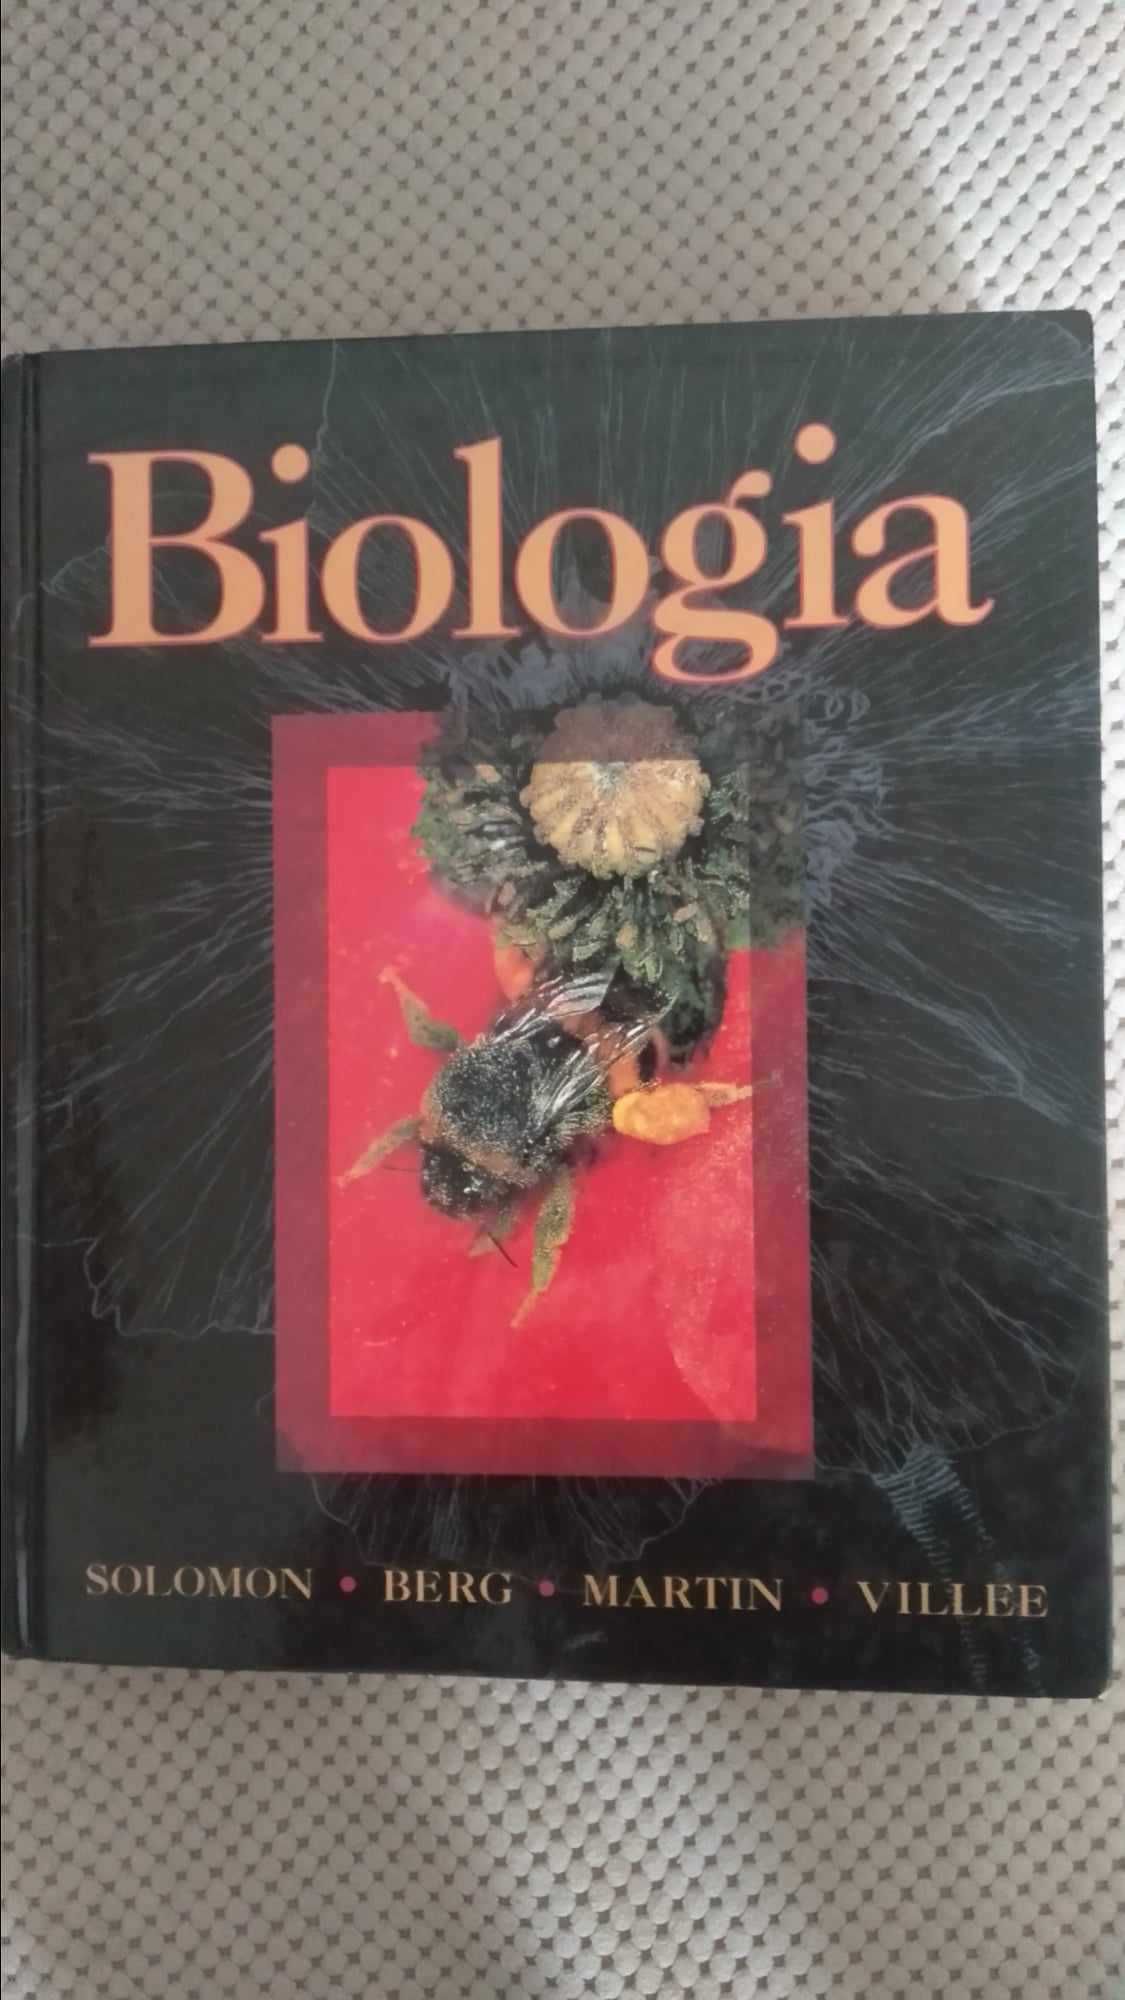 Solomon, Berg, Martin, Villee "Biologia"